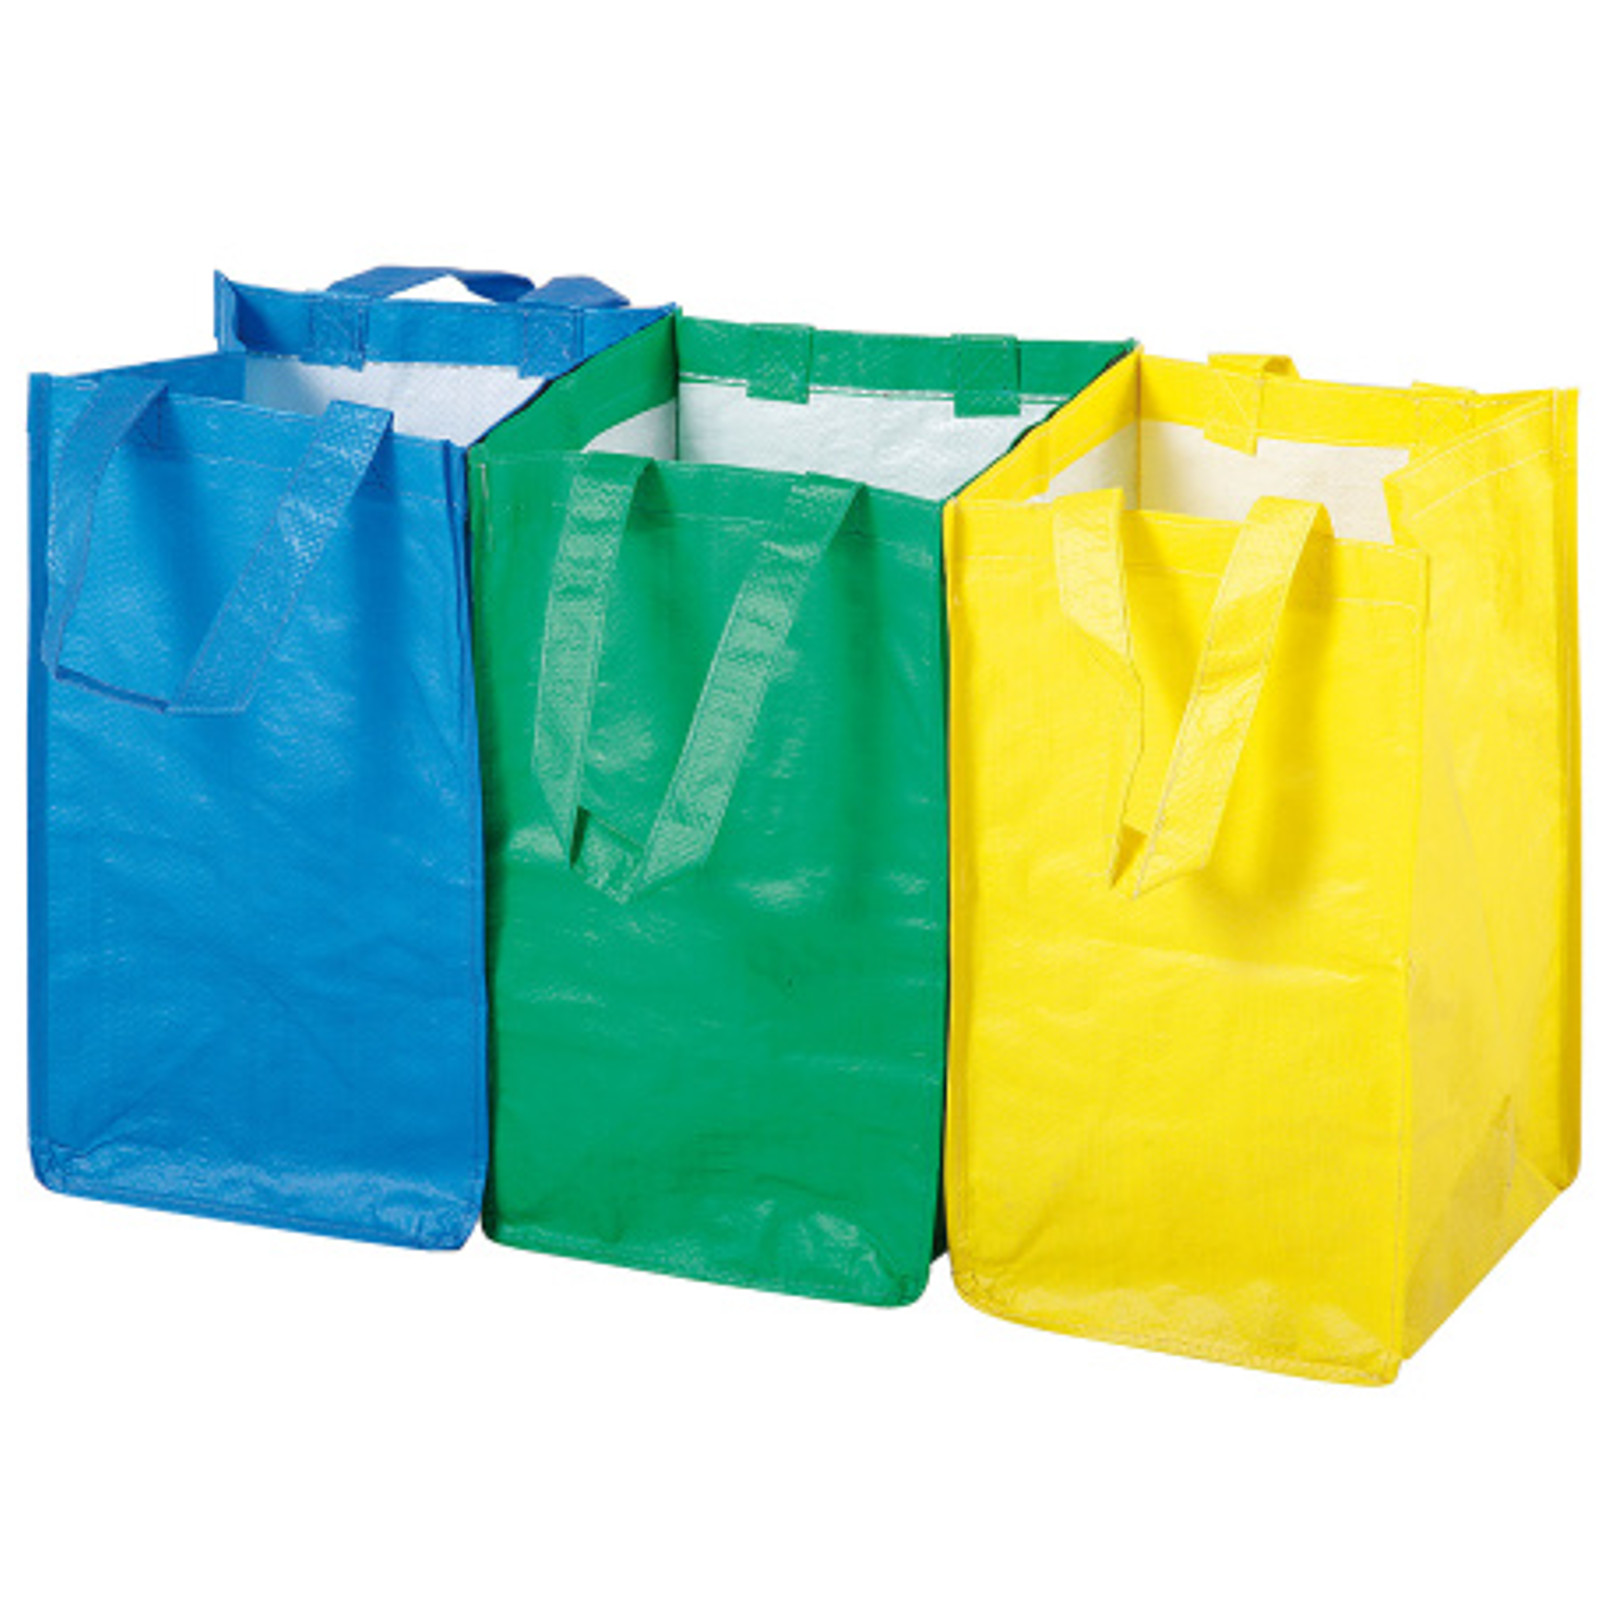 Wytrzymałe torby do segregacji odpadków śmieci ZESTAW 3szt  x 21L - sklep.odpady.org